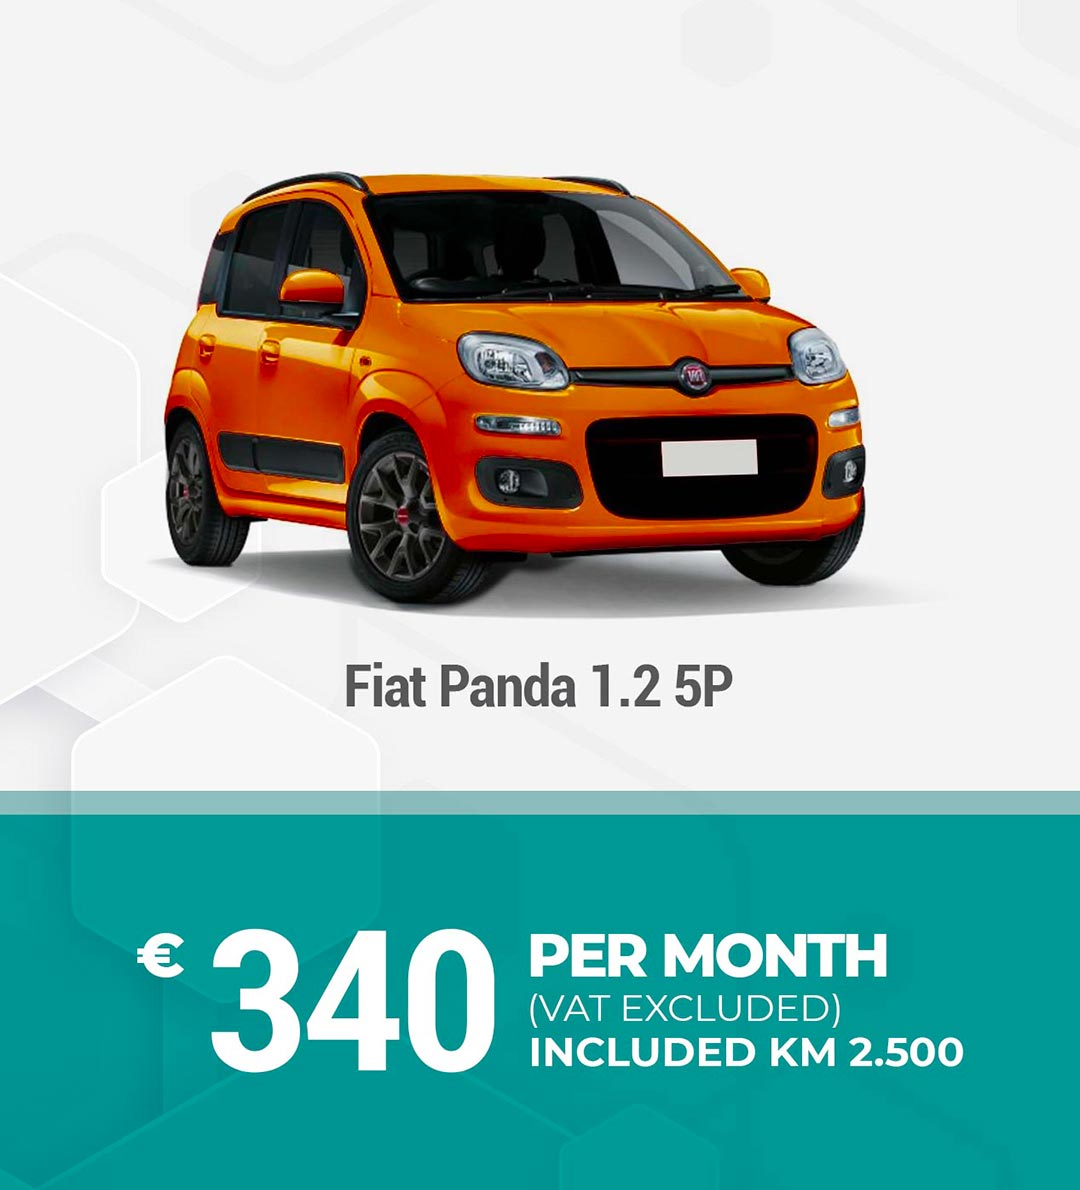 Medium term rental Fiat Panda